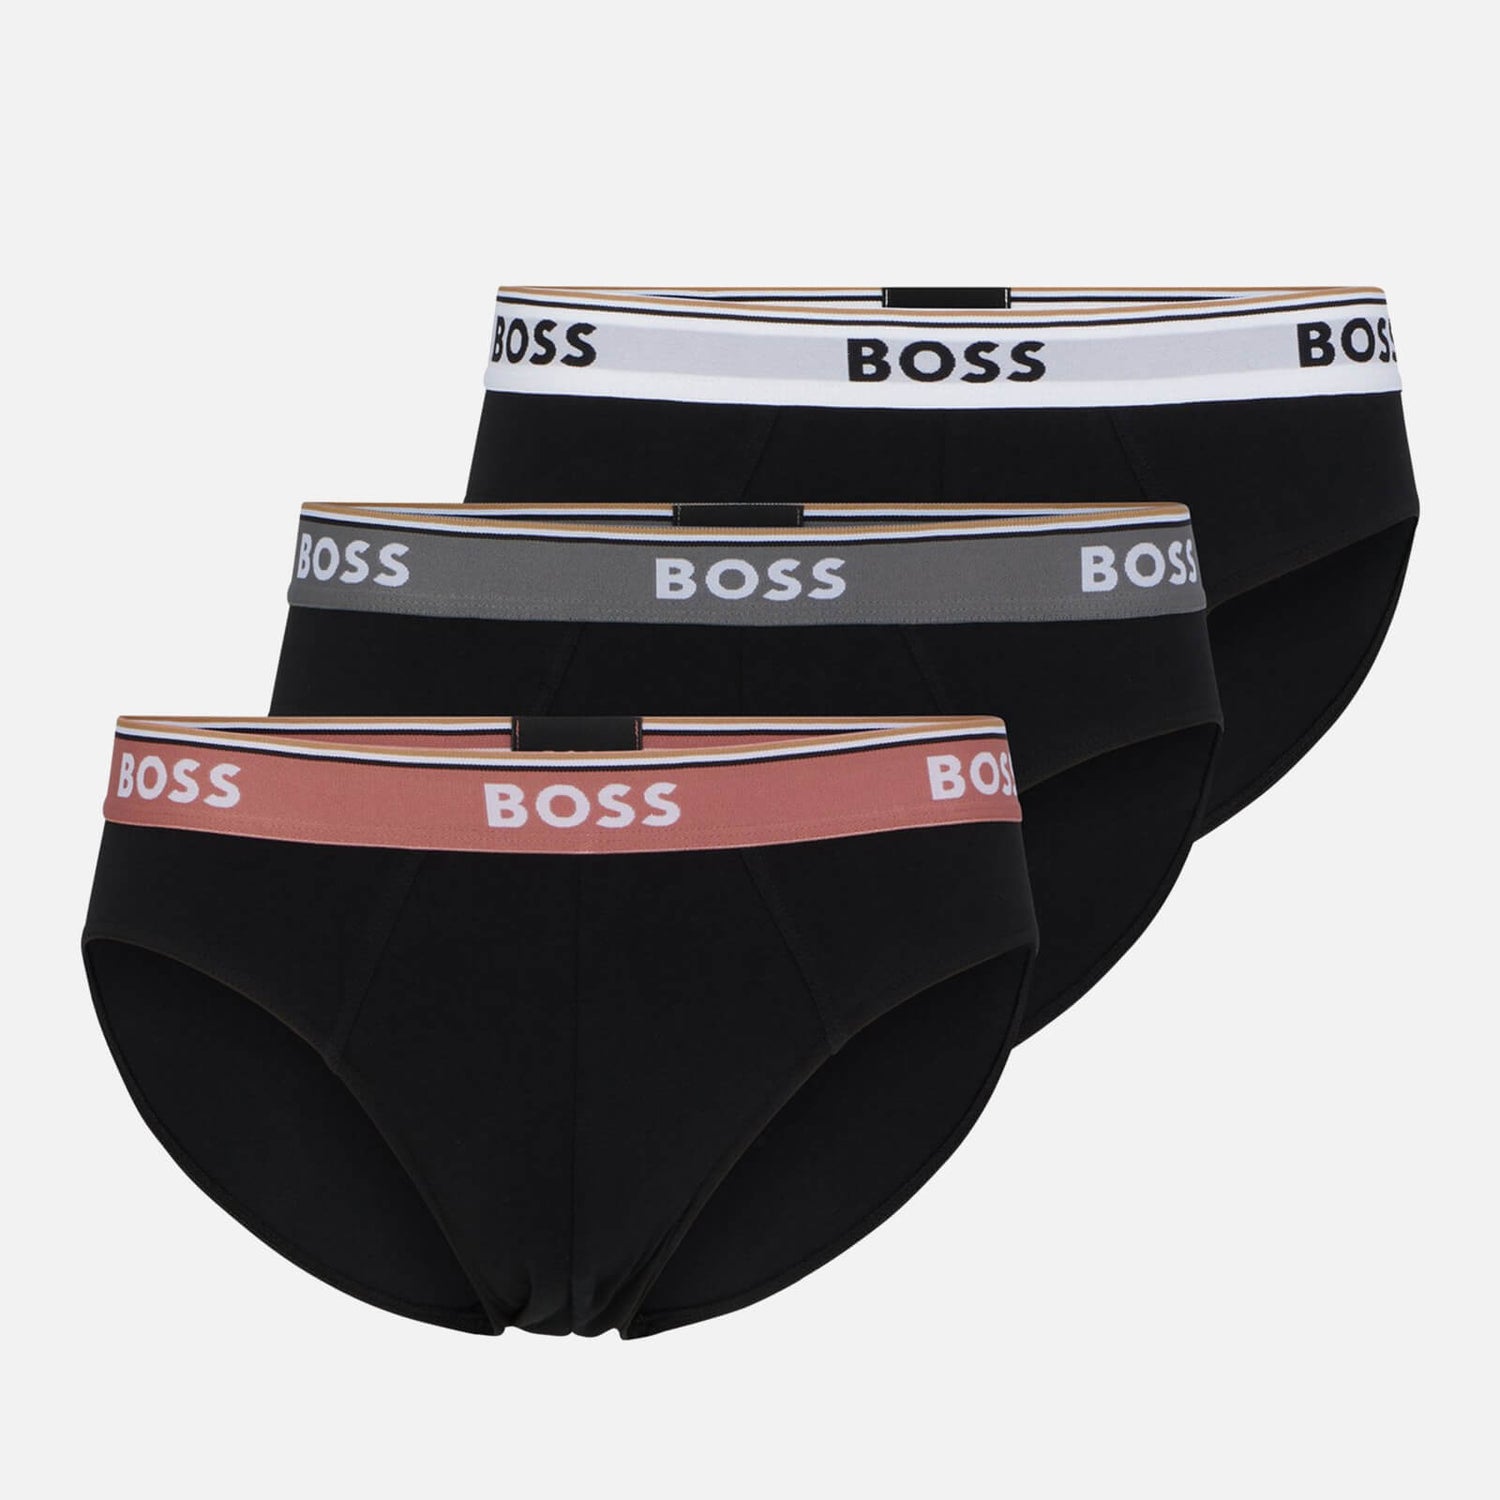 BOSS Bodywear 3-Pack Cotton-Blend Briefs - S